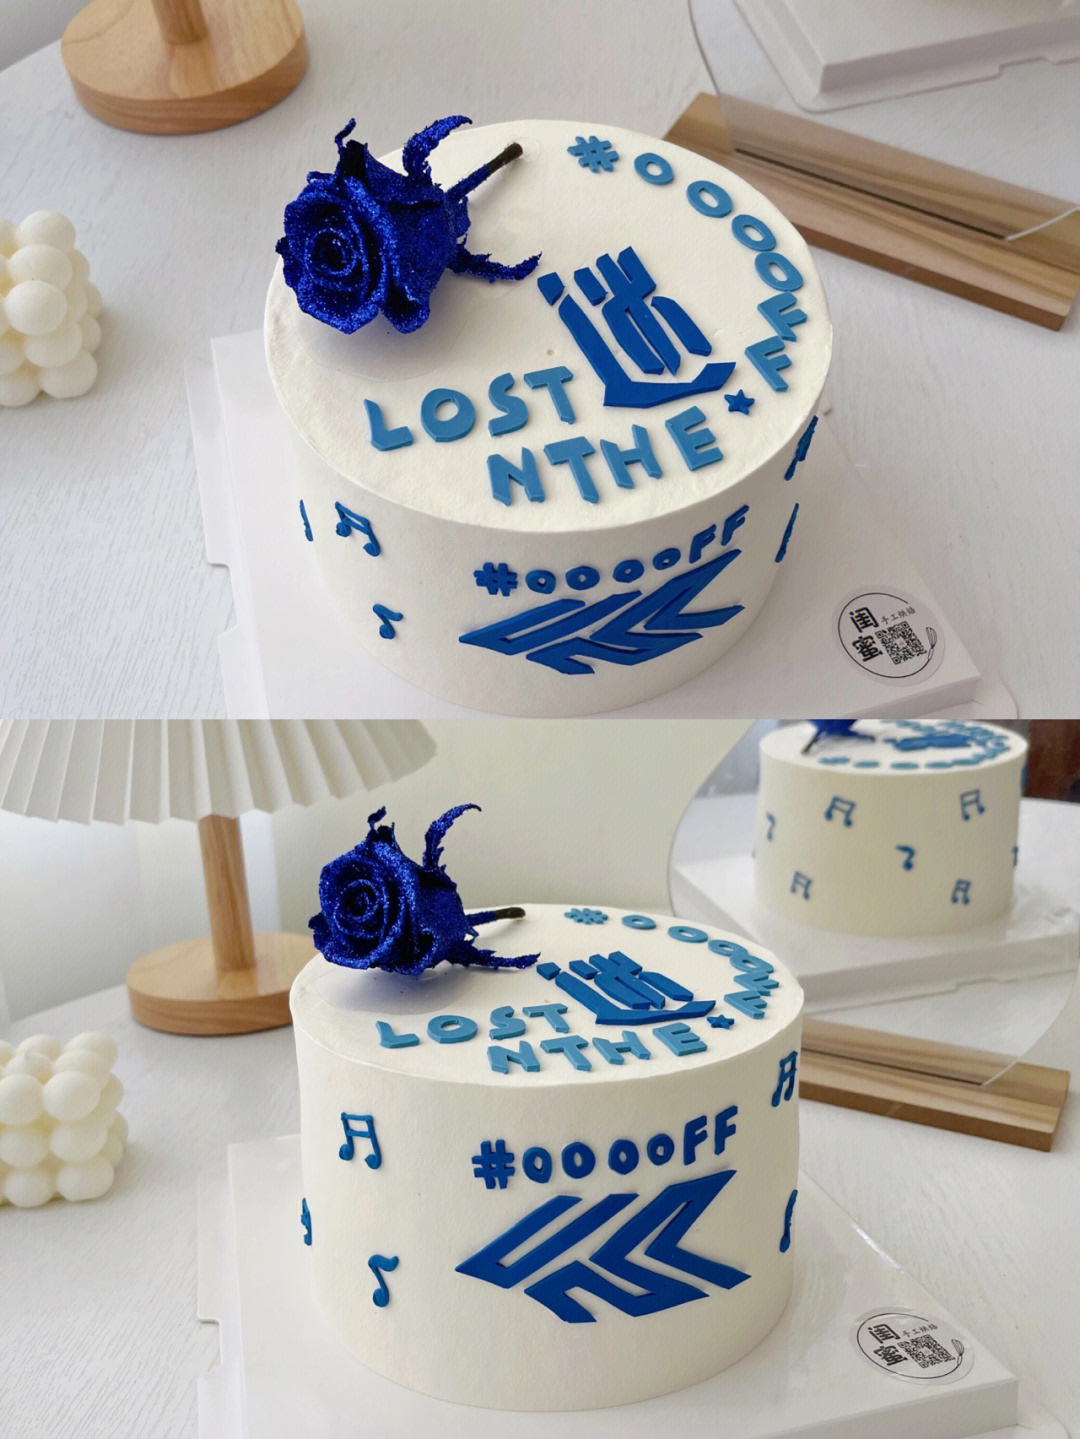 蔡徐坤的生日蛋糕图片